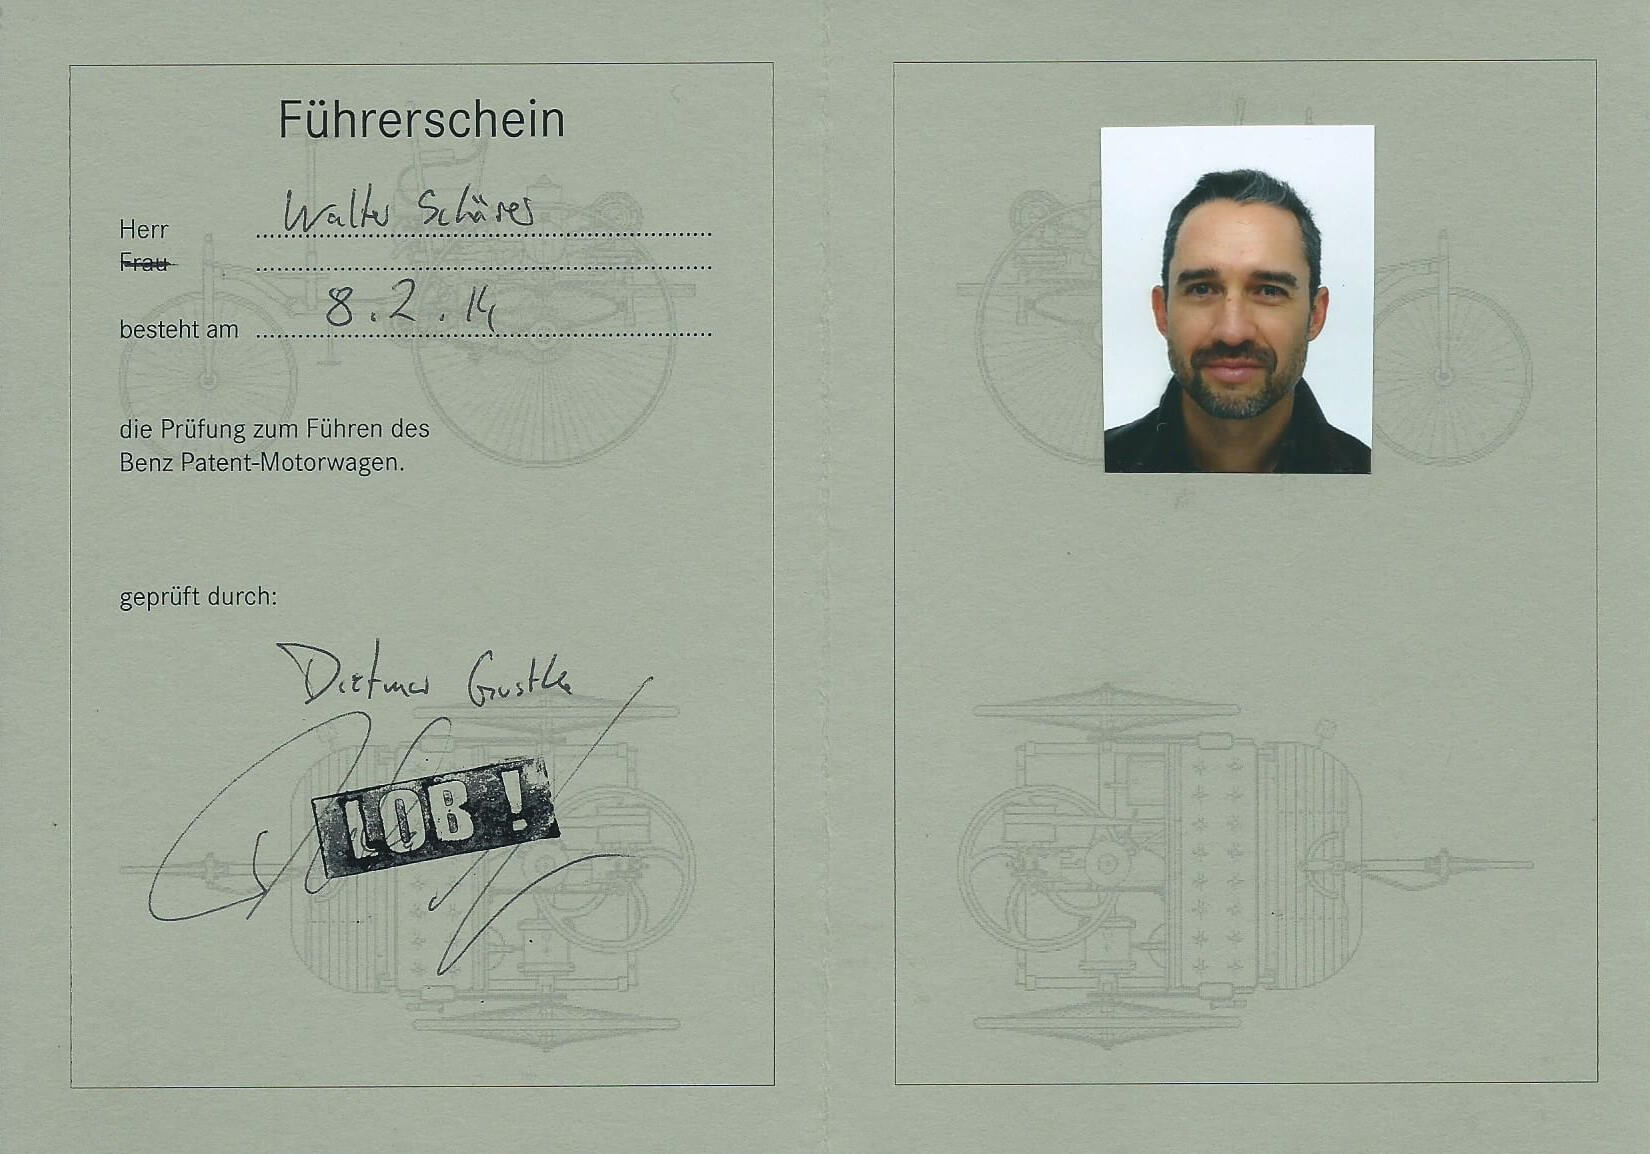 Führerschein für den Benz Patent-Motorwagen